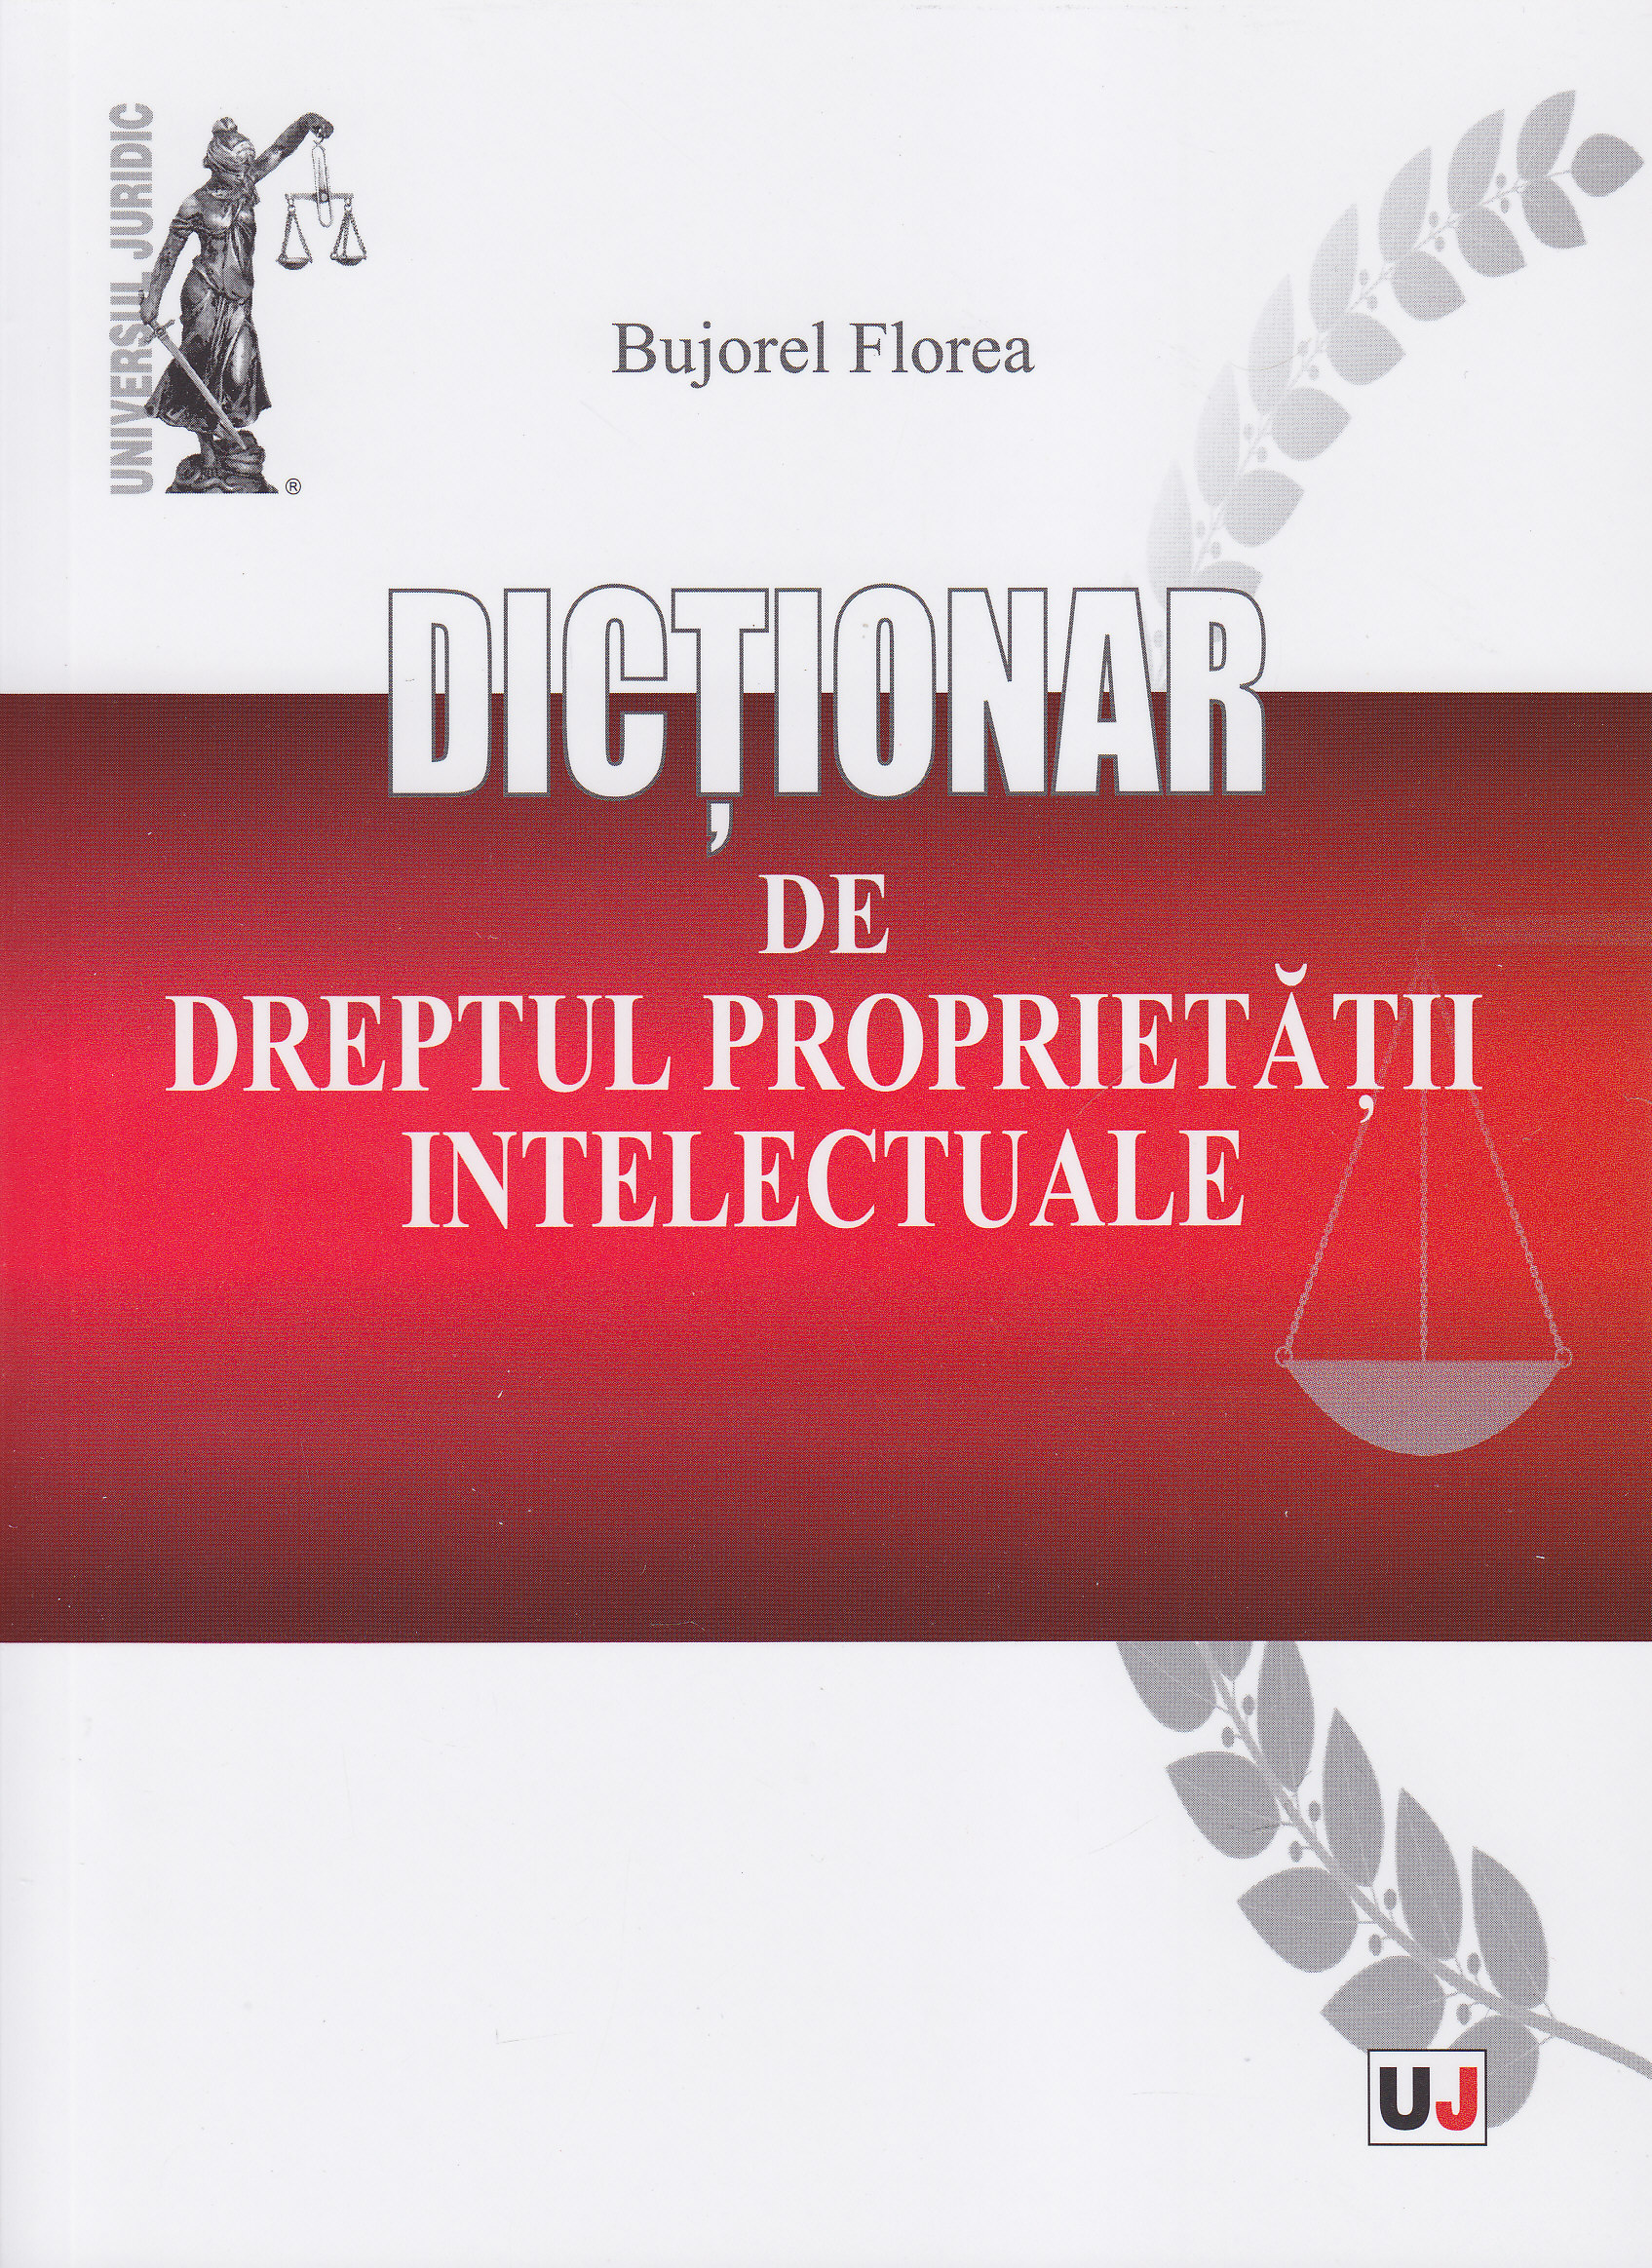 Dictionar de dreptul proprietatii intelectuale - Bujorel Florea